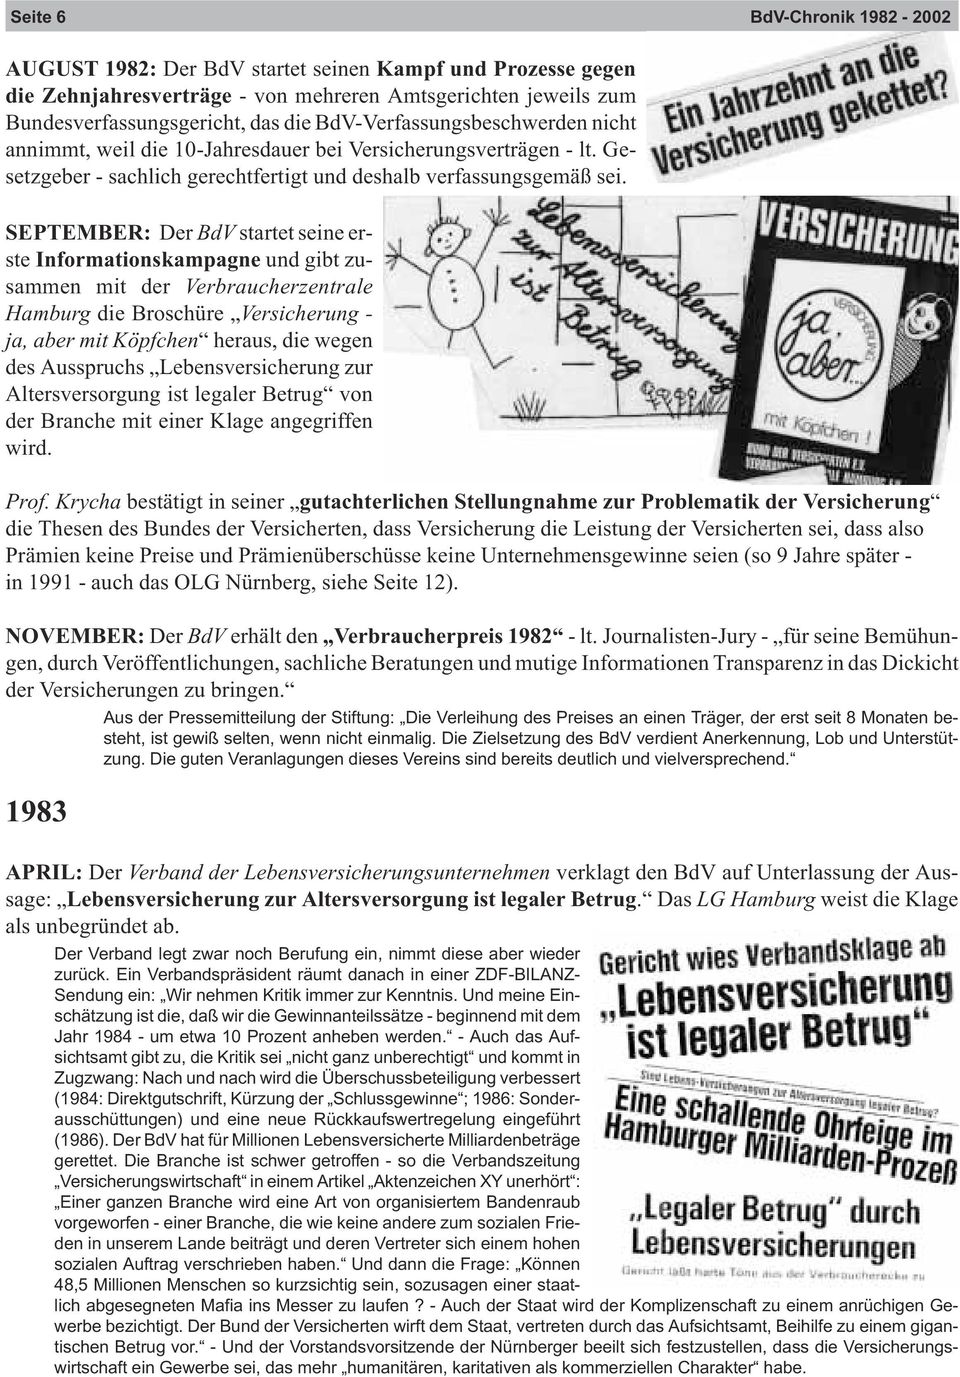 SEPTEMBER: Der BdV startet seine erste Informationskampagne und gibt zusammen mit der Verbraucherzentrale Hamburg die Broschüre Versicherung - ja, aber mit Köpfchen heraus, die wegen des Ausspruchs